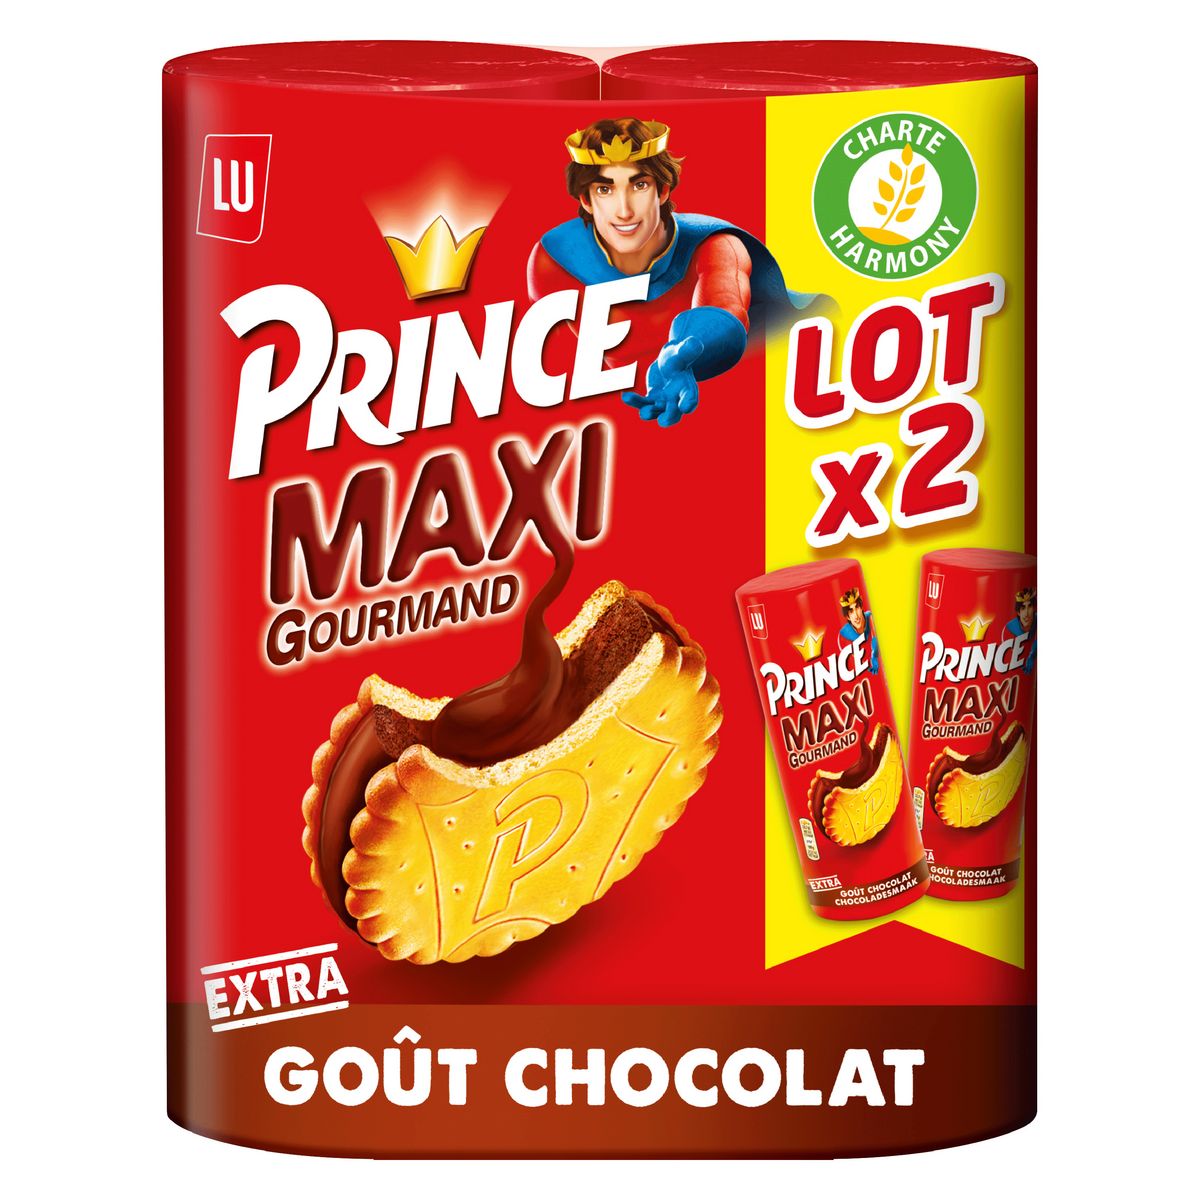 PRINCE Biscuits fourrés au chocolat 4x300g pas cher 